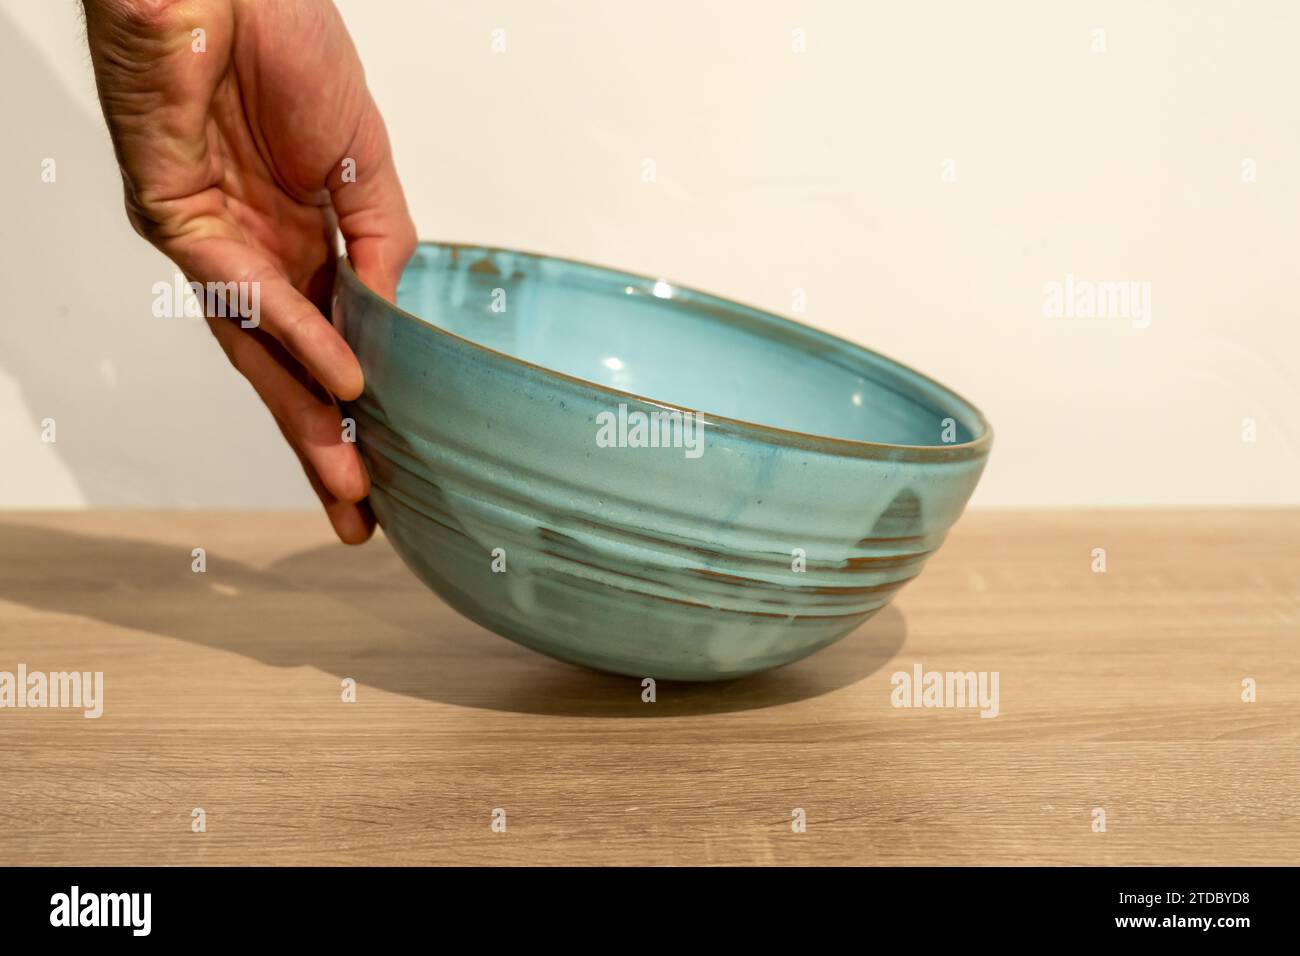 Una persona tiene una ciotola per insalata blu. Foto di alta qualità. Ceramica fatta a mano. Tavolo in legno fatto a mano. Mano umana. Fotografia del prodotto. Foto Stock